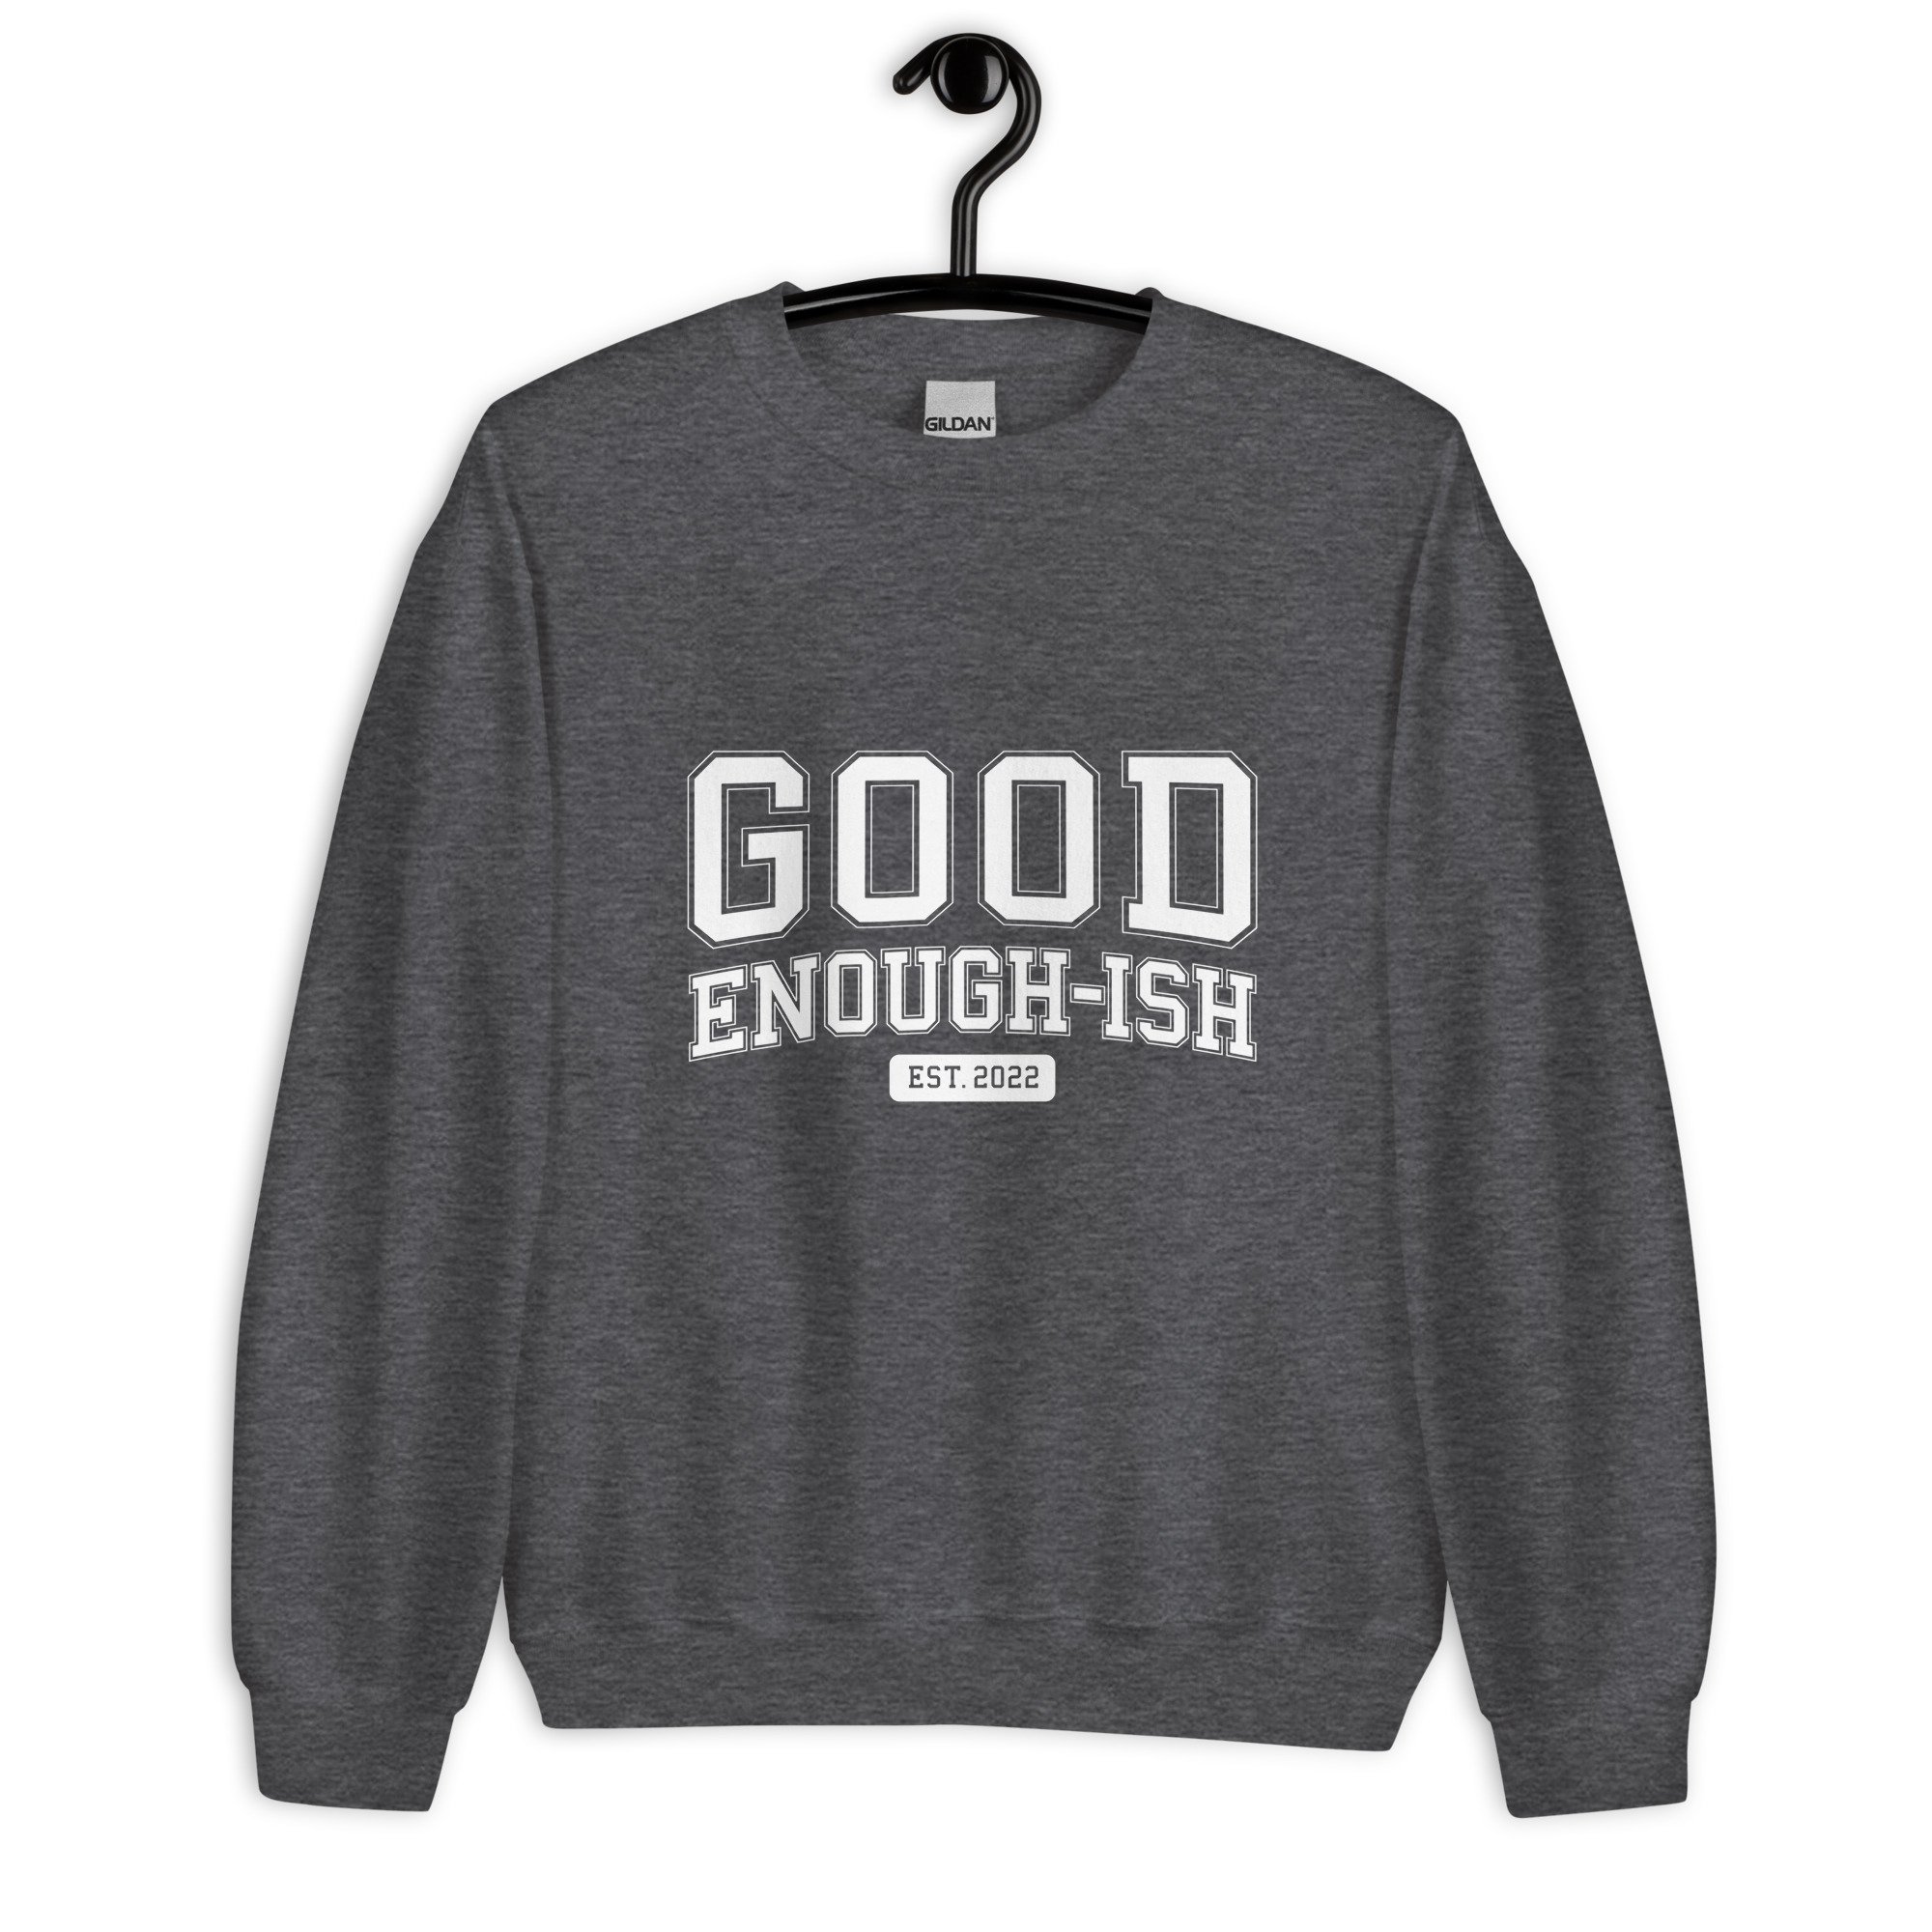 Good Enough-ish University Unisex Sweatshirt — Good Enough-ish Podcast